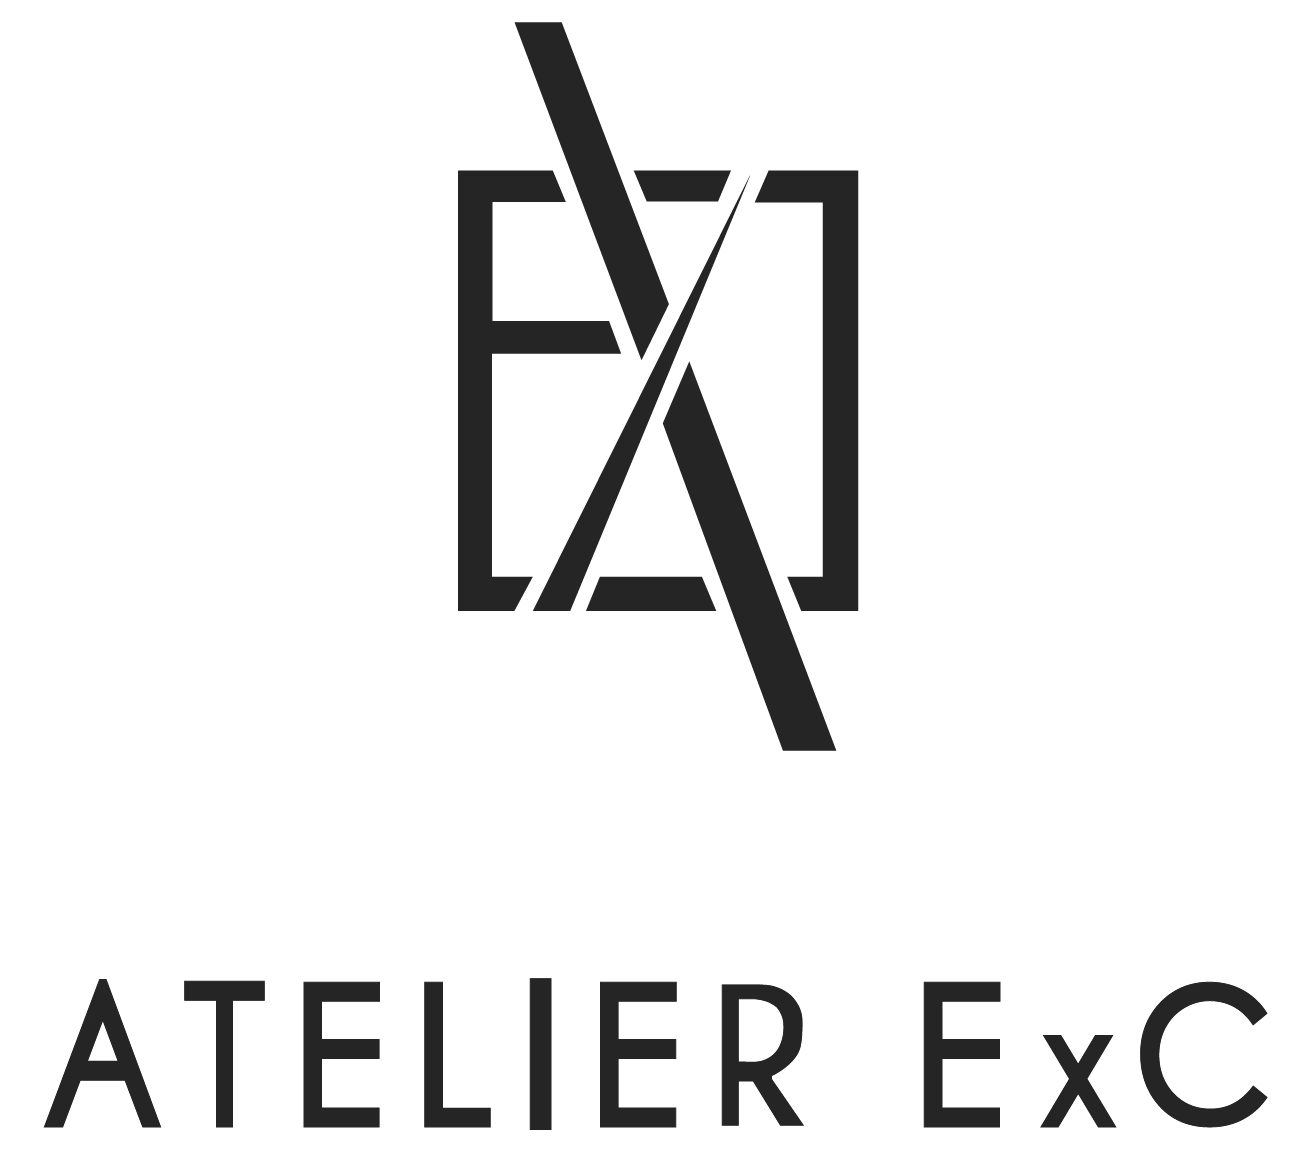 Atelier ExC Logo